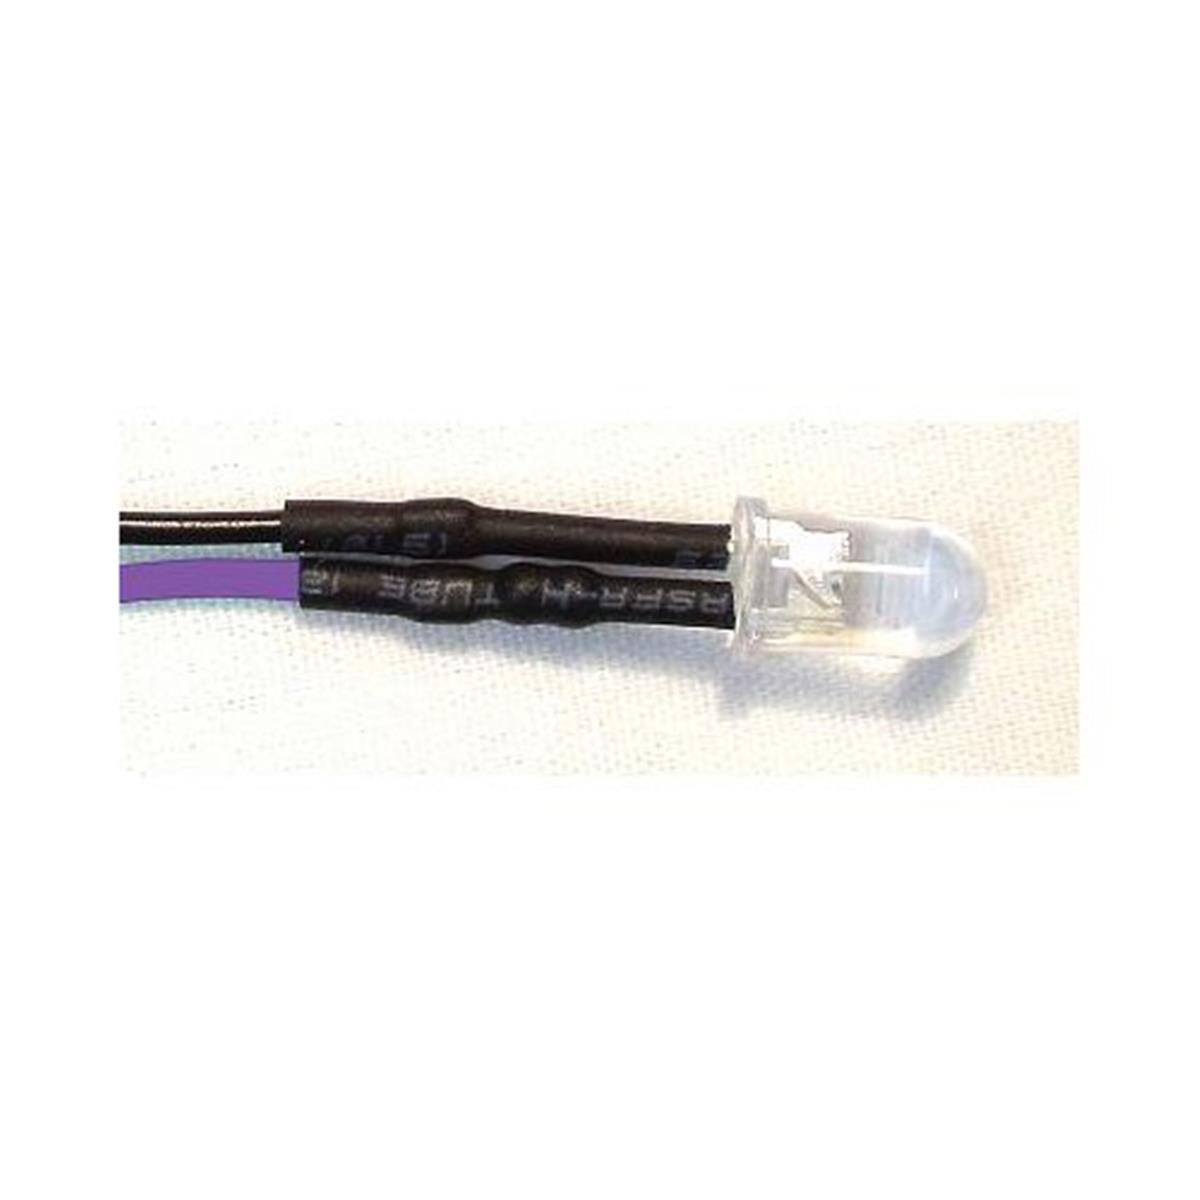 Ubl12v-3-p Ultra Bright 12 Volt 3mm Led 10pk - Purple